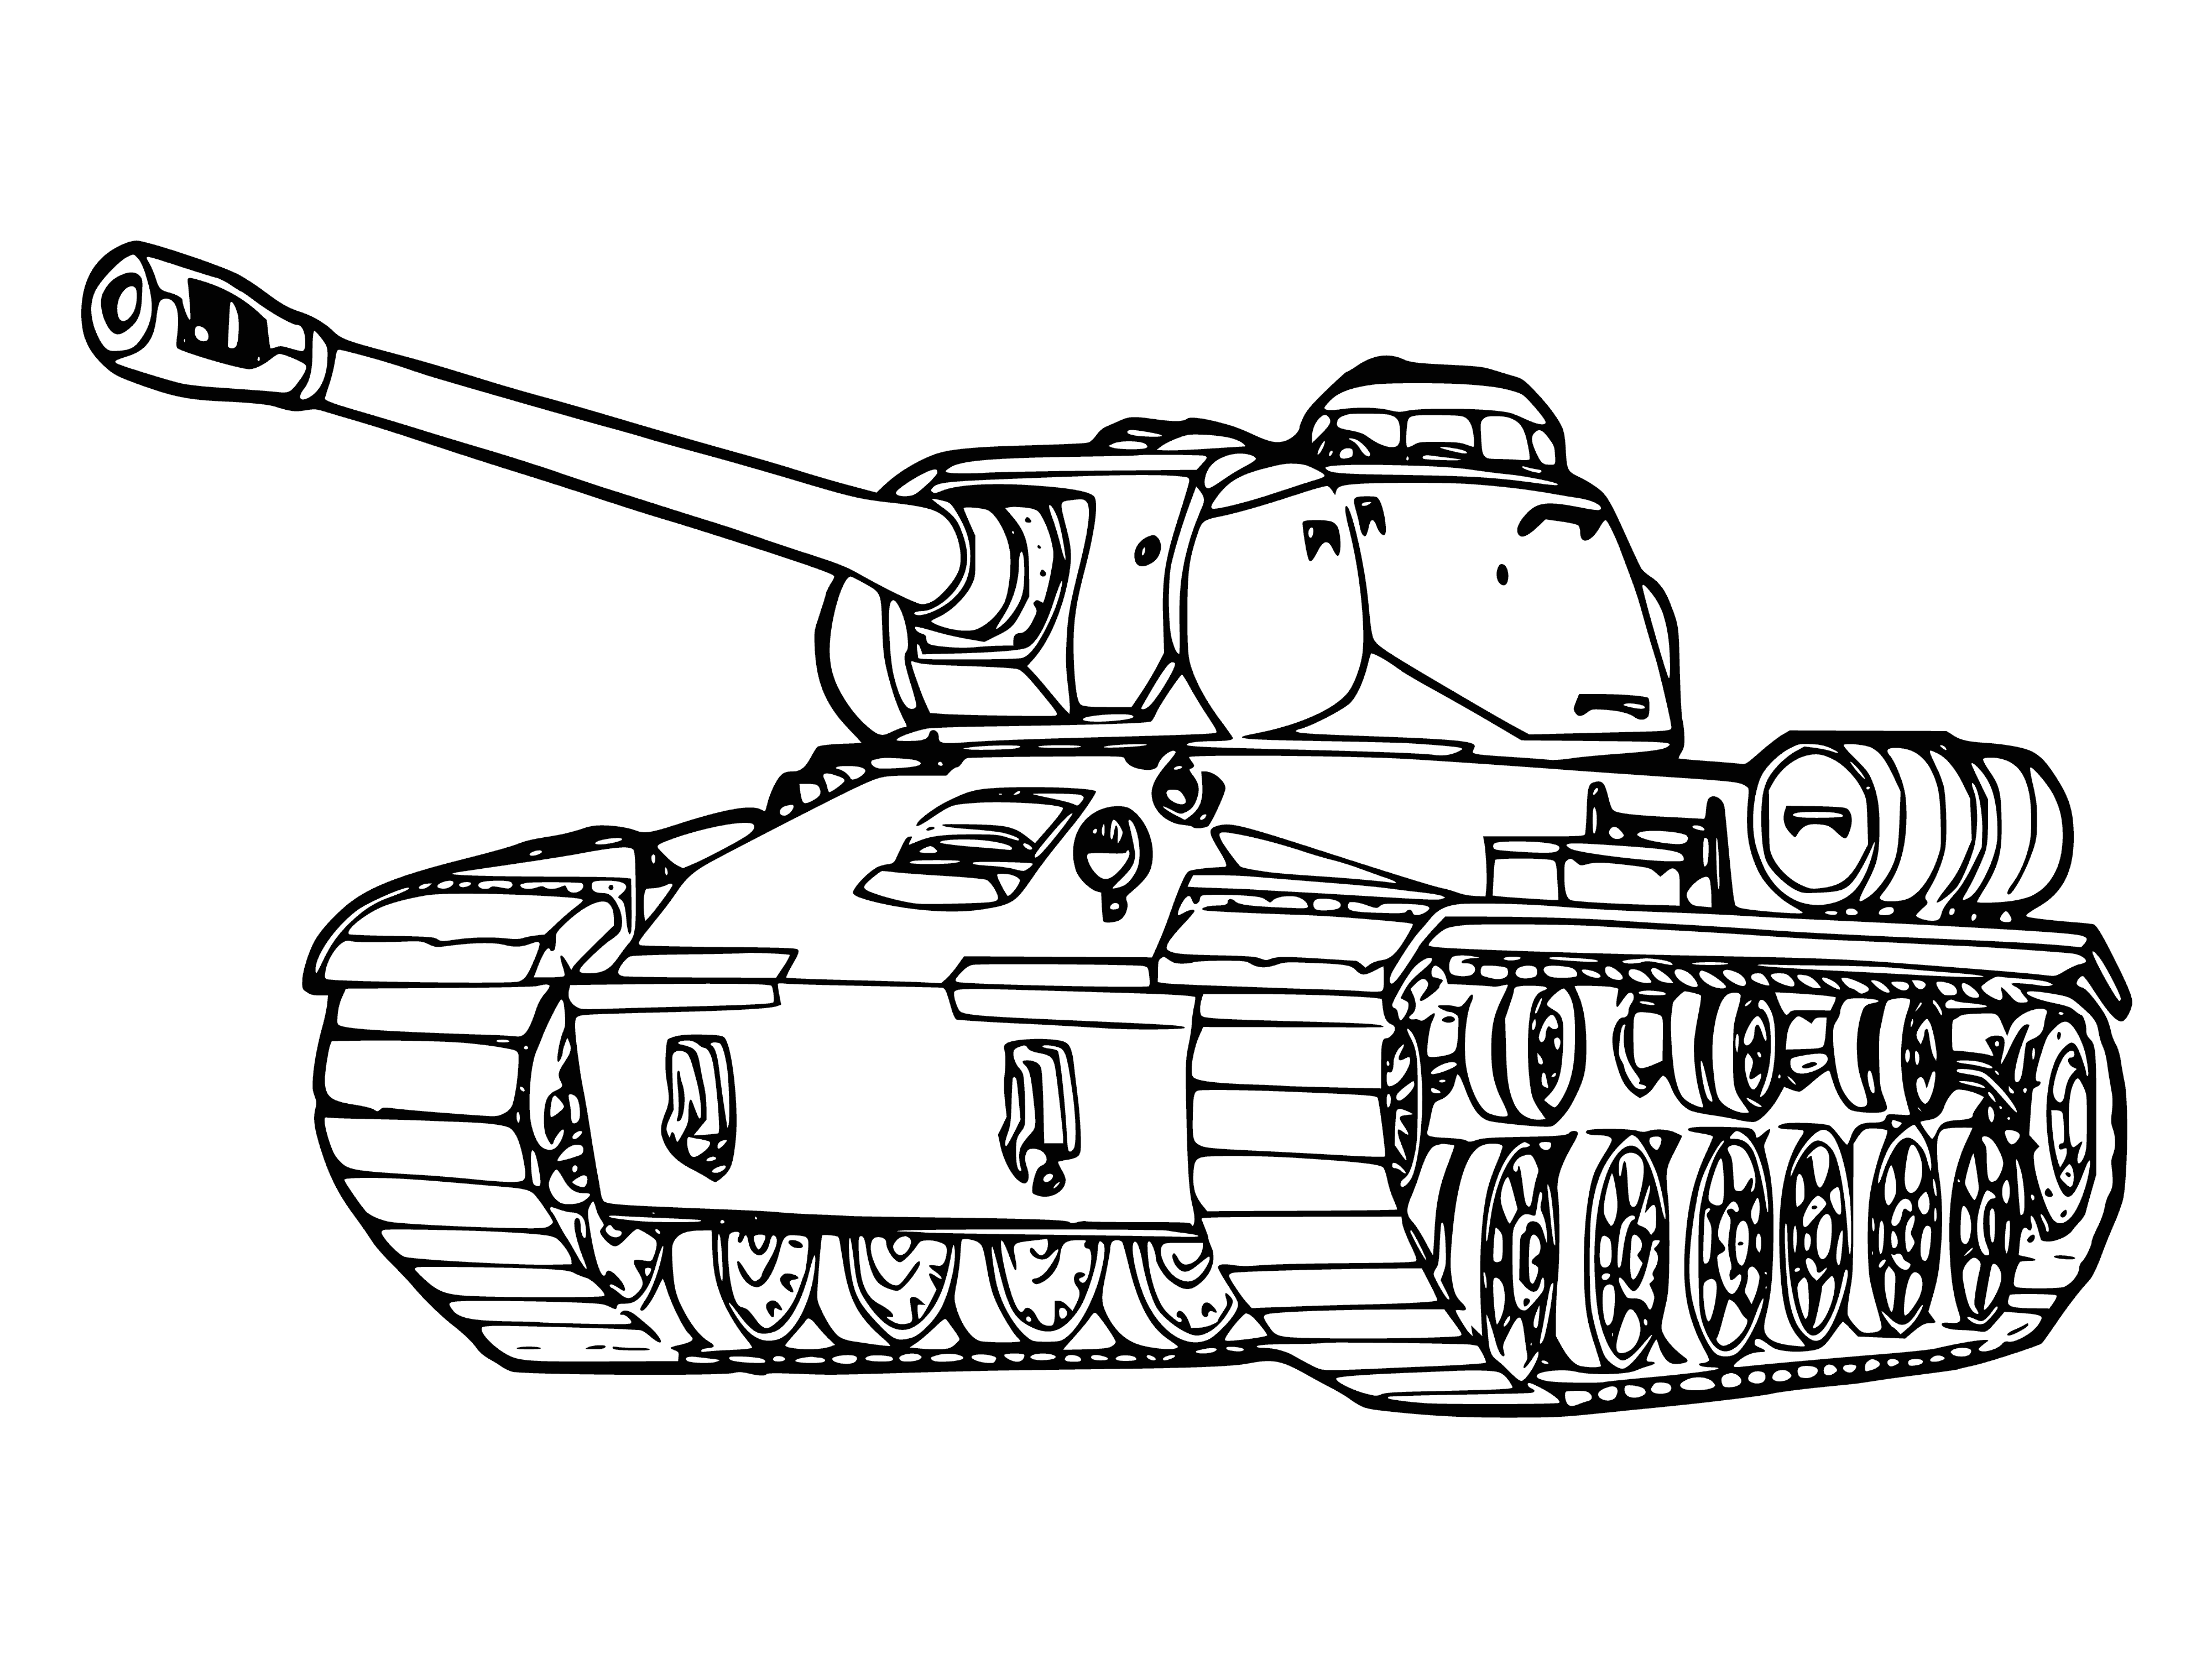 Раскраска танчики. Танк т-34-85 раскраска. Раскраска танк т 34. Раскраски танки кв 1. Раскраска танк кв 1.